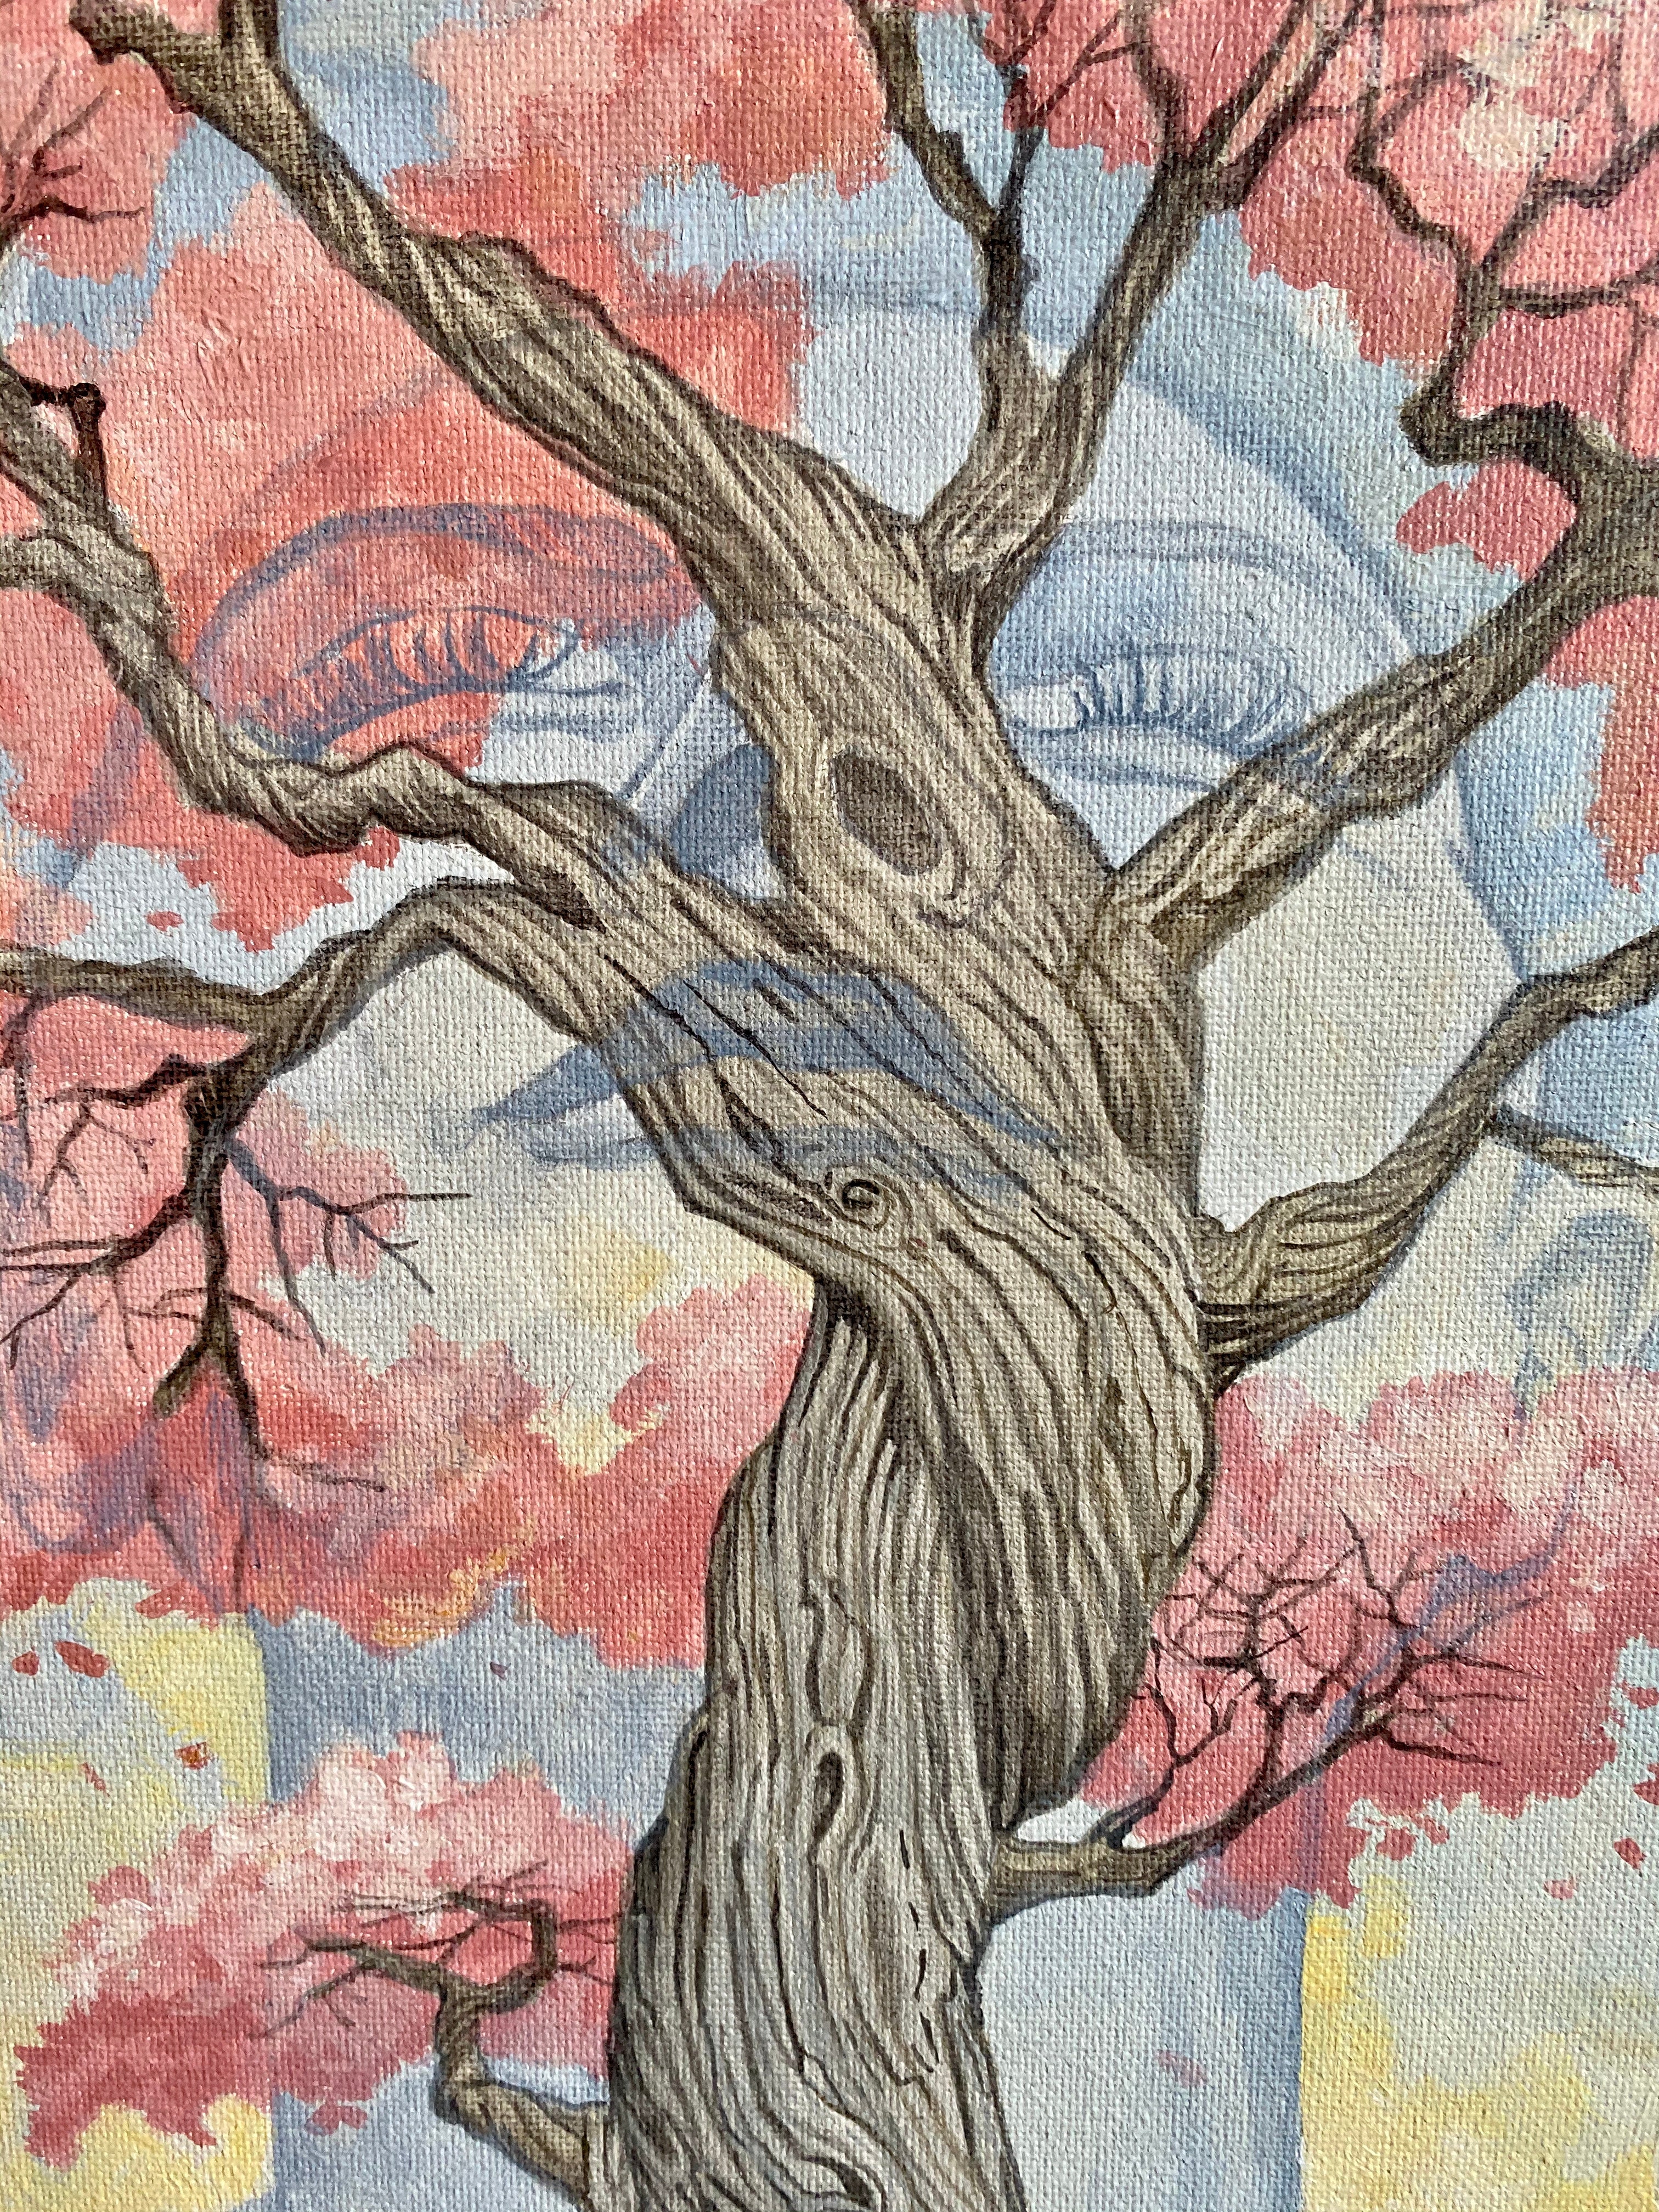 "Wisdom Tree"